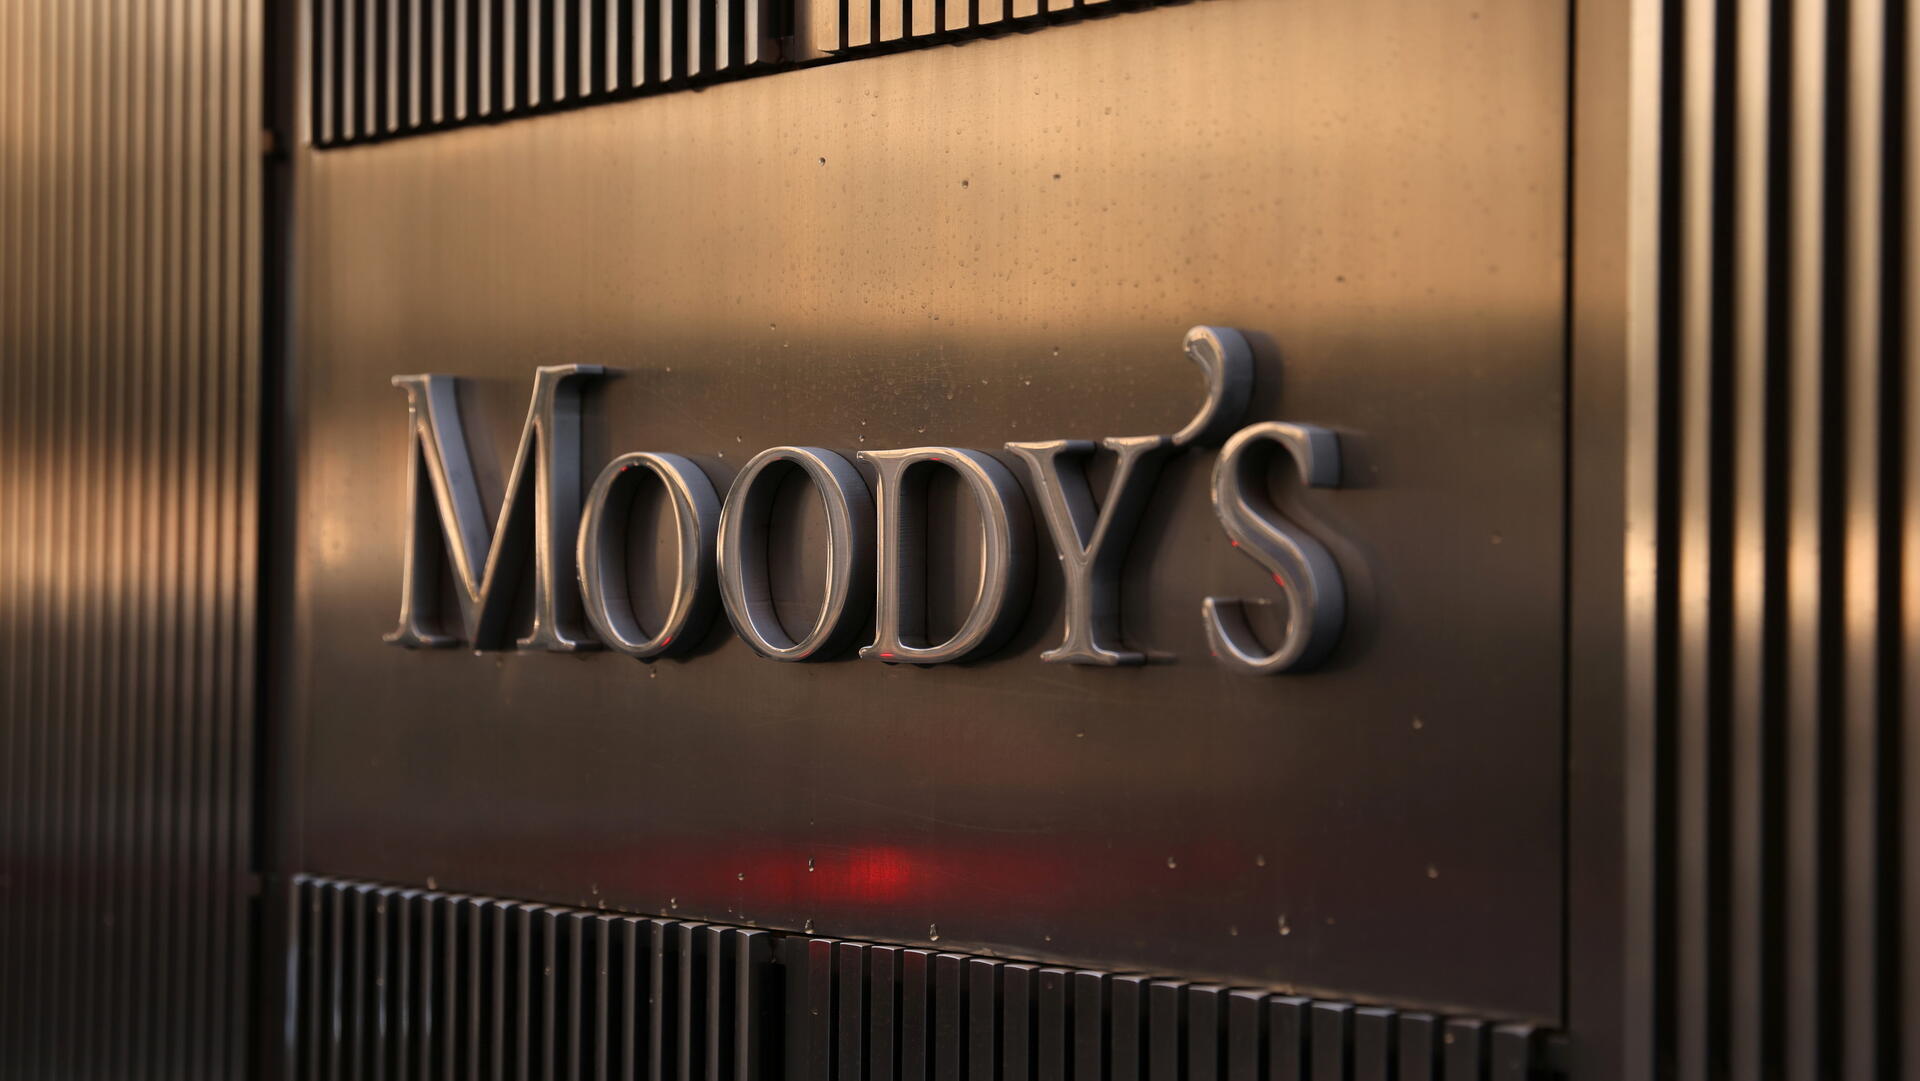 מטה מודי'ס מודיס Moody's ניו יורק דירוג אשראי